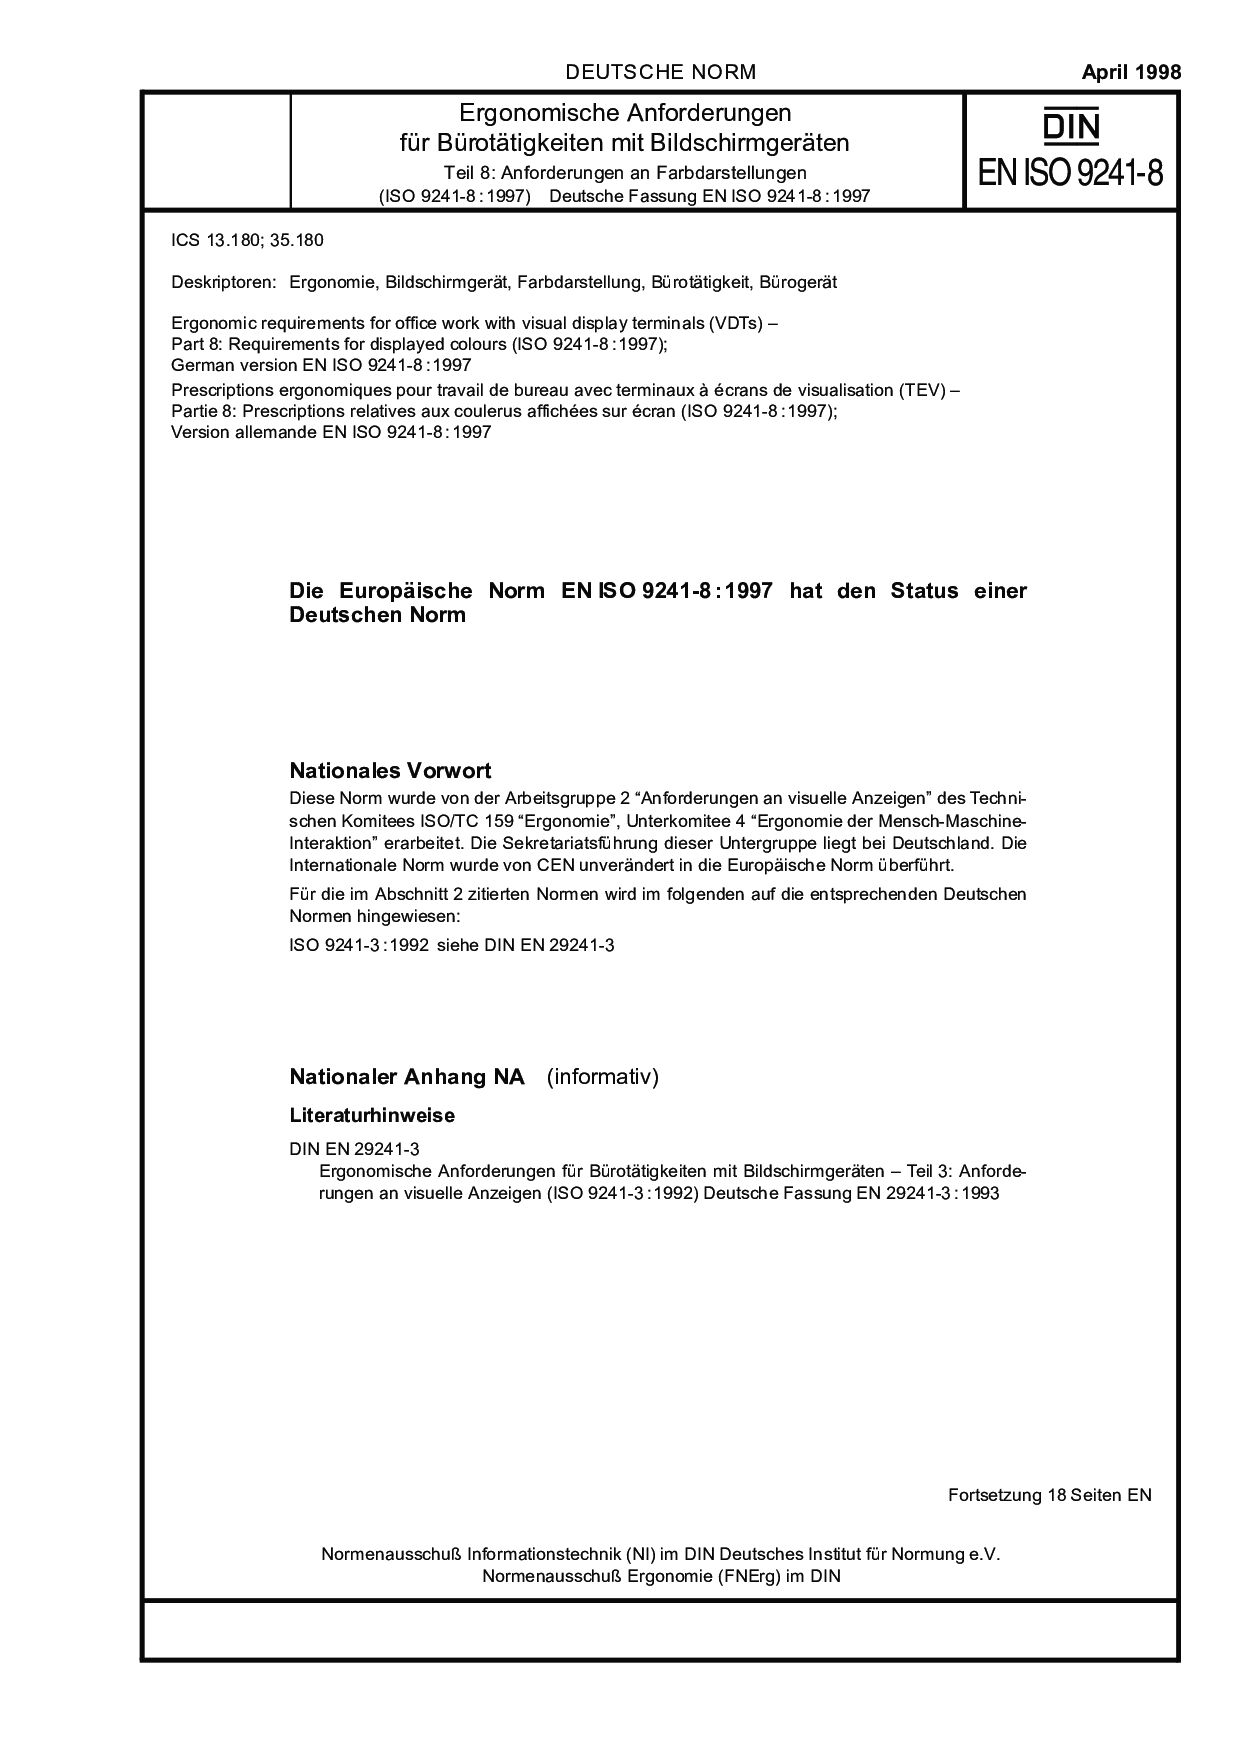 DIN EN ISO 9241-8:1998